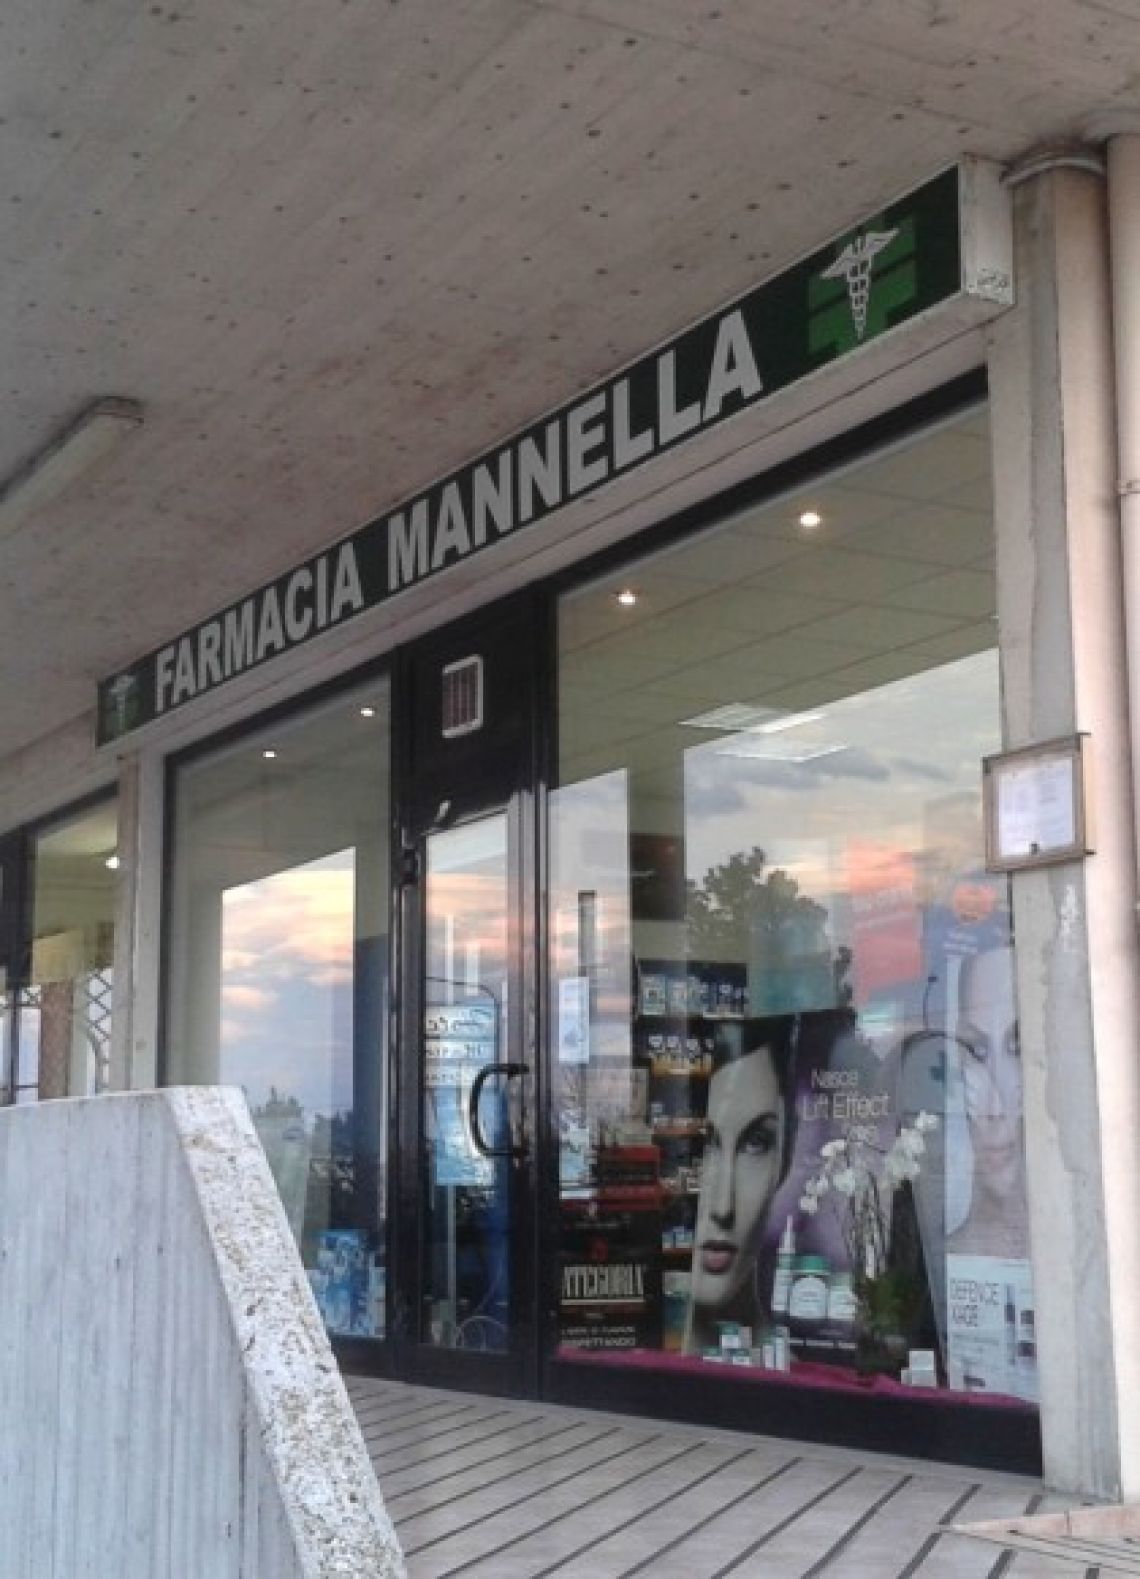 Ex Farmacia comunale - Farmacia Mannella